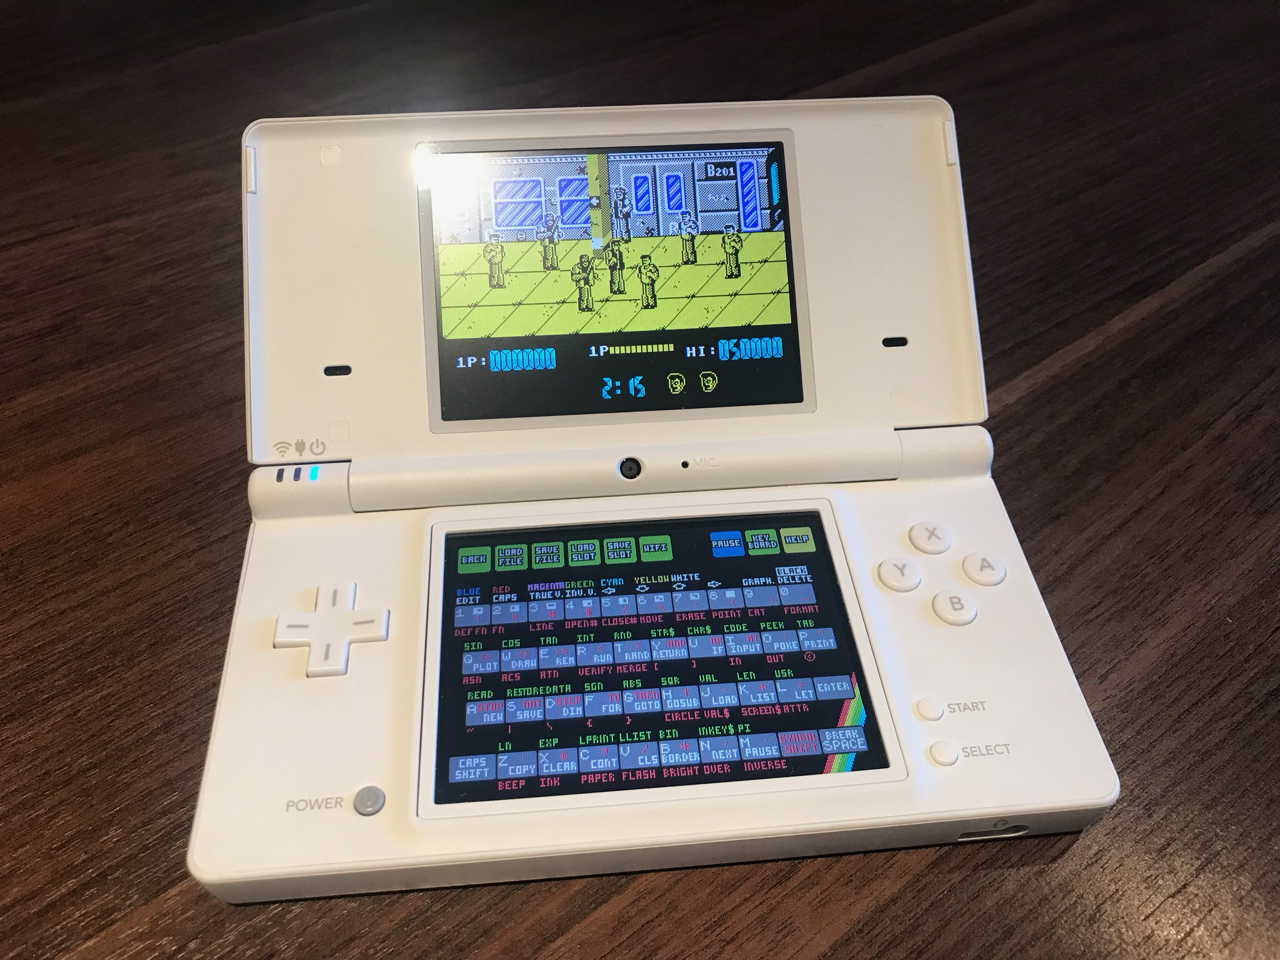 Nintendo DS ZX Spectrum emulation – Speccy Nostalgia